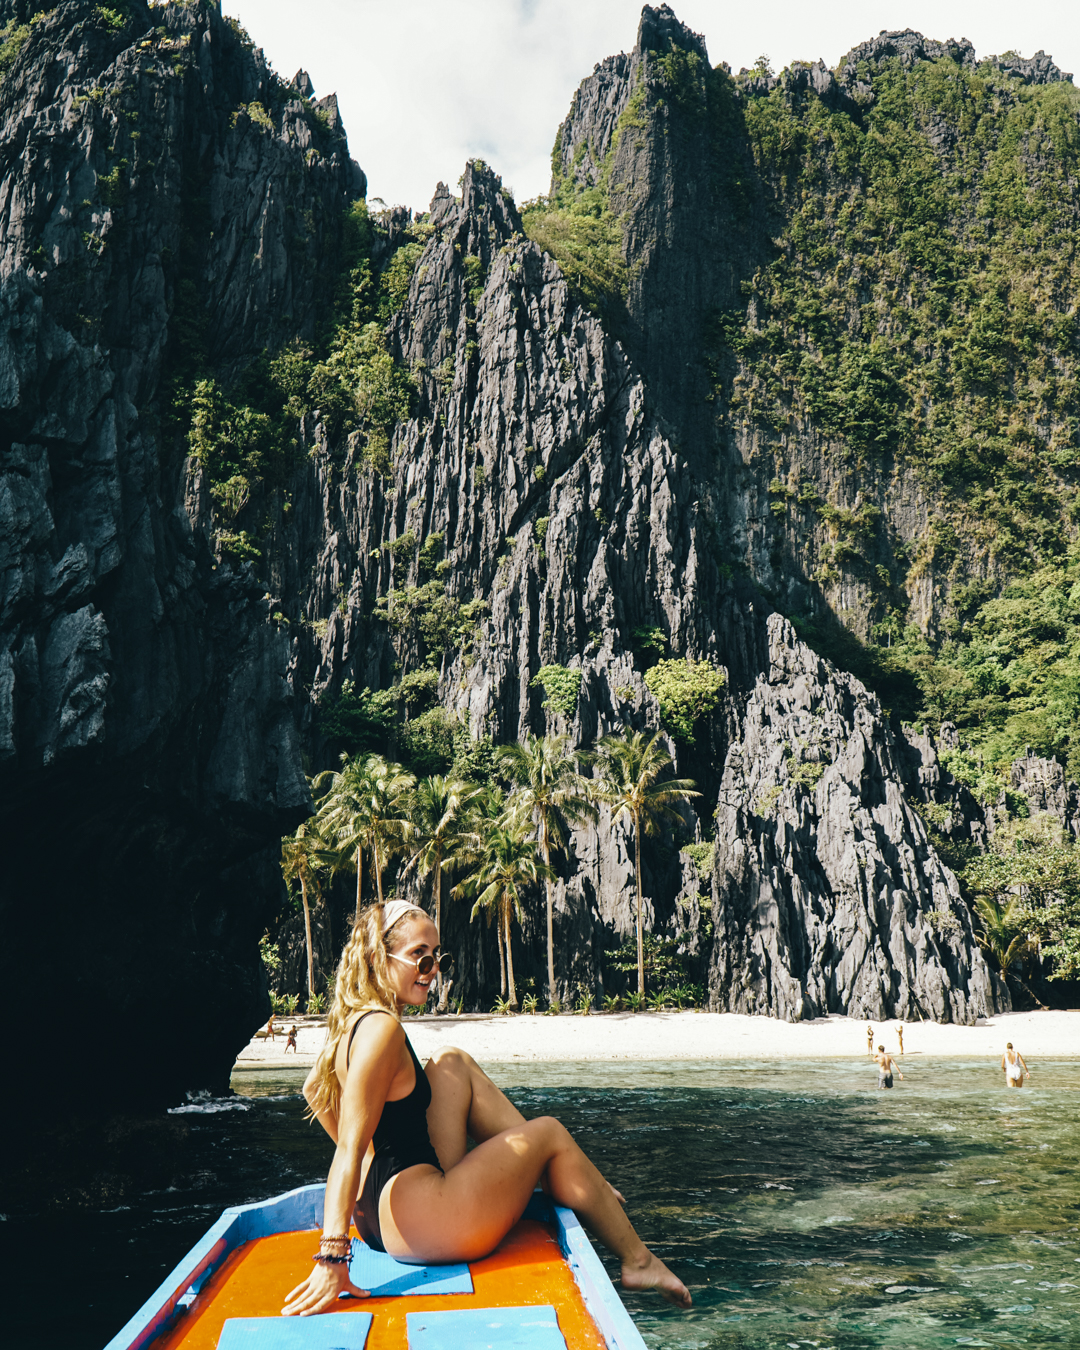 Solo female traveler in El Nido Philippines